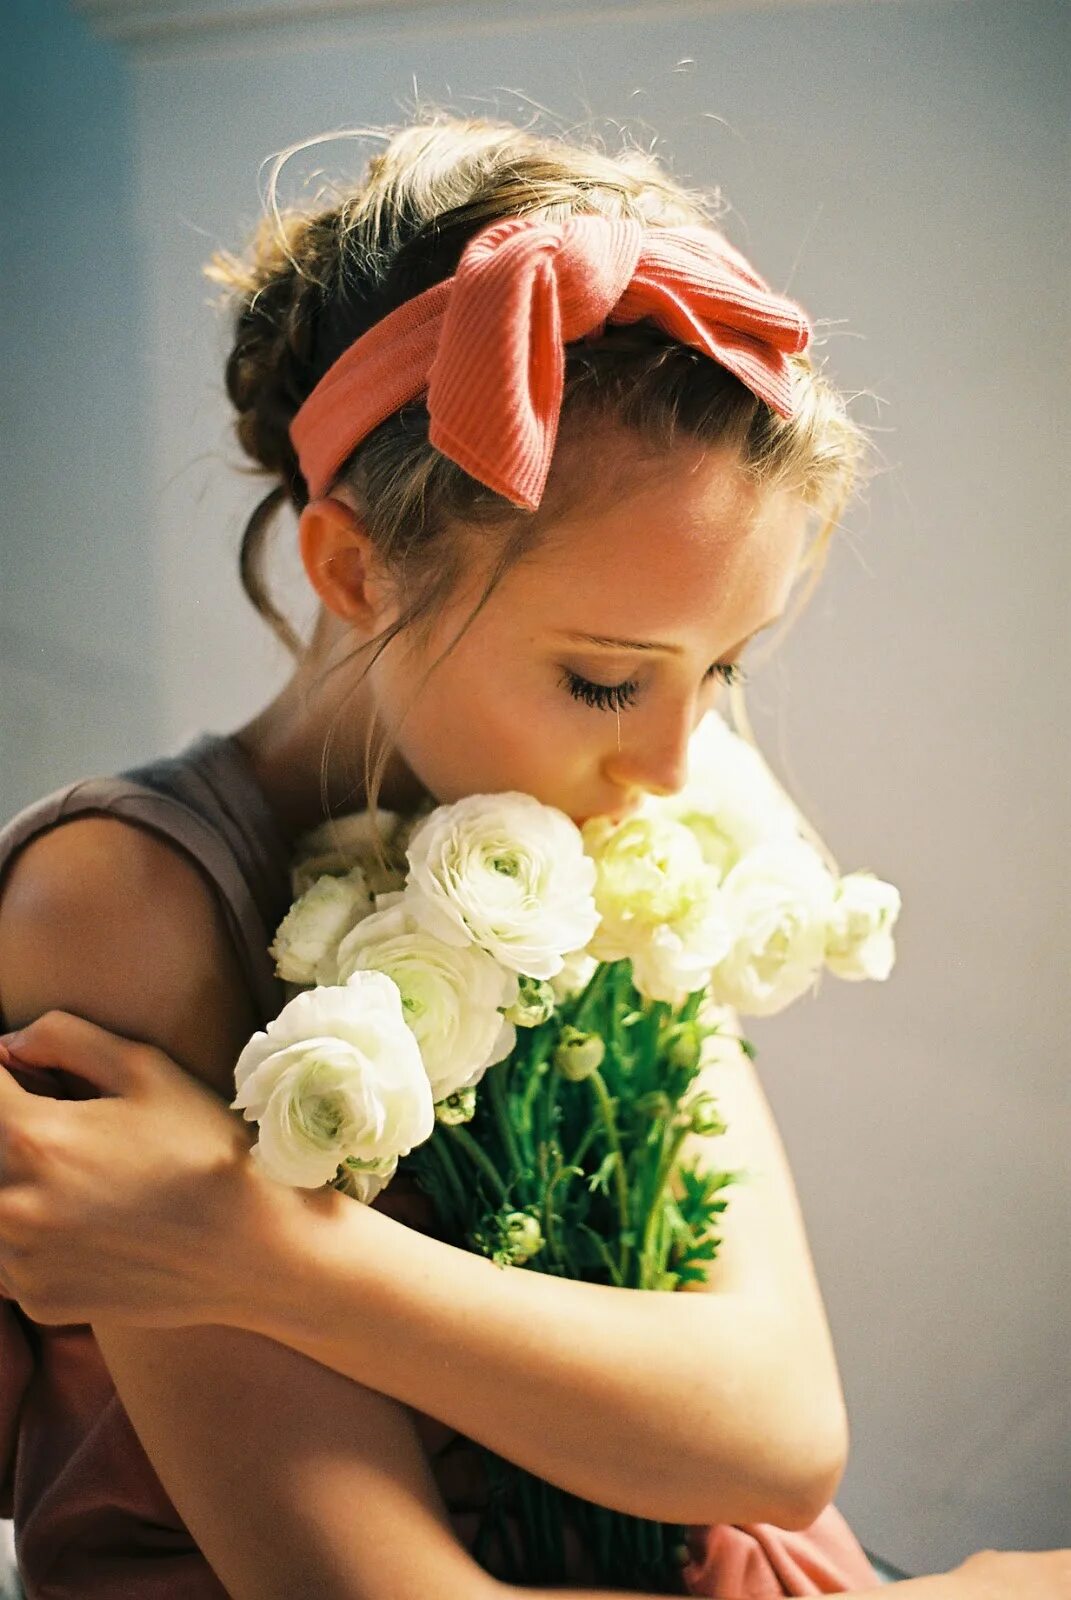 Обнимая букет. Букет "девушке". Девочка с букетом. Девочка с цветами. Девушка с белыми розами.